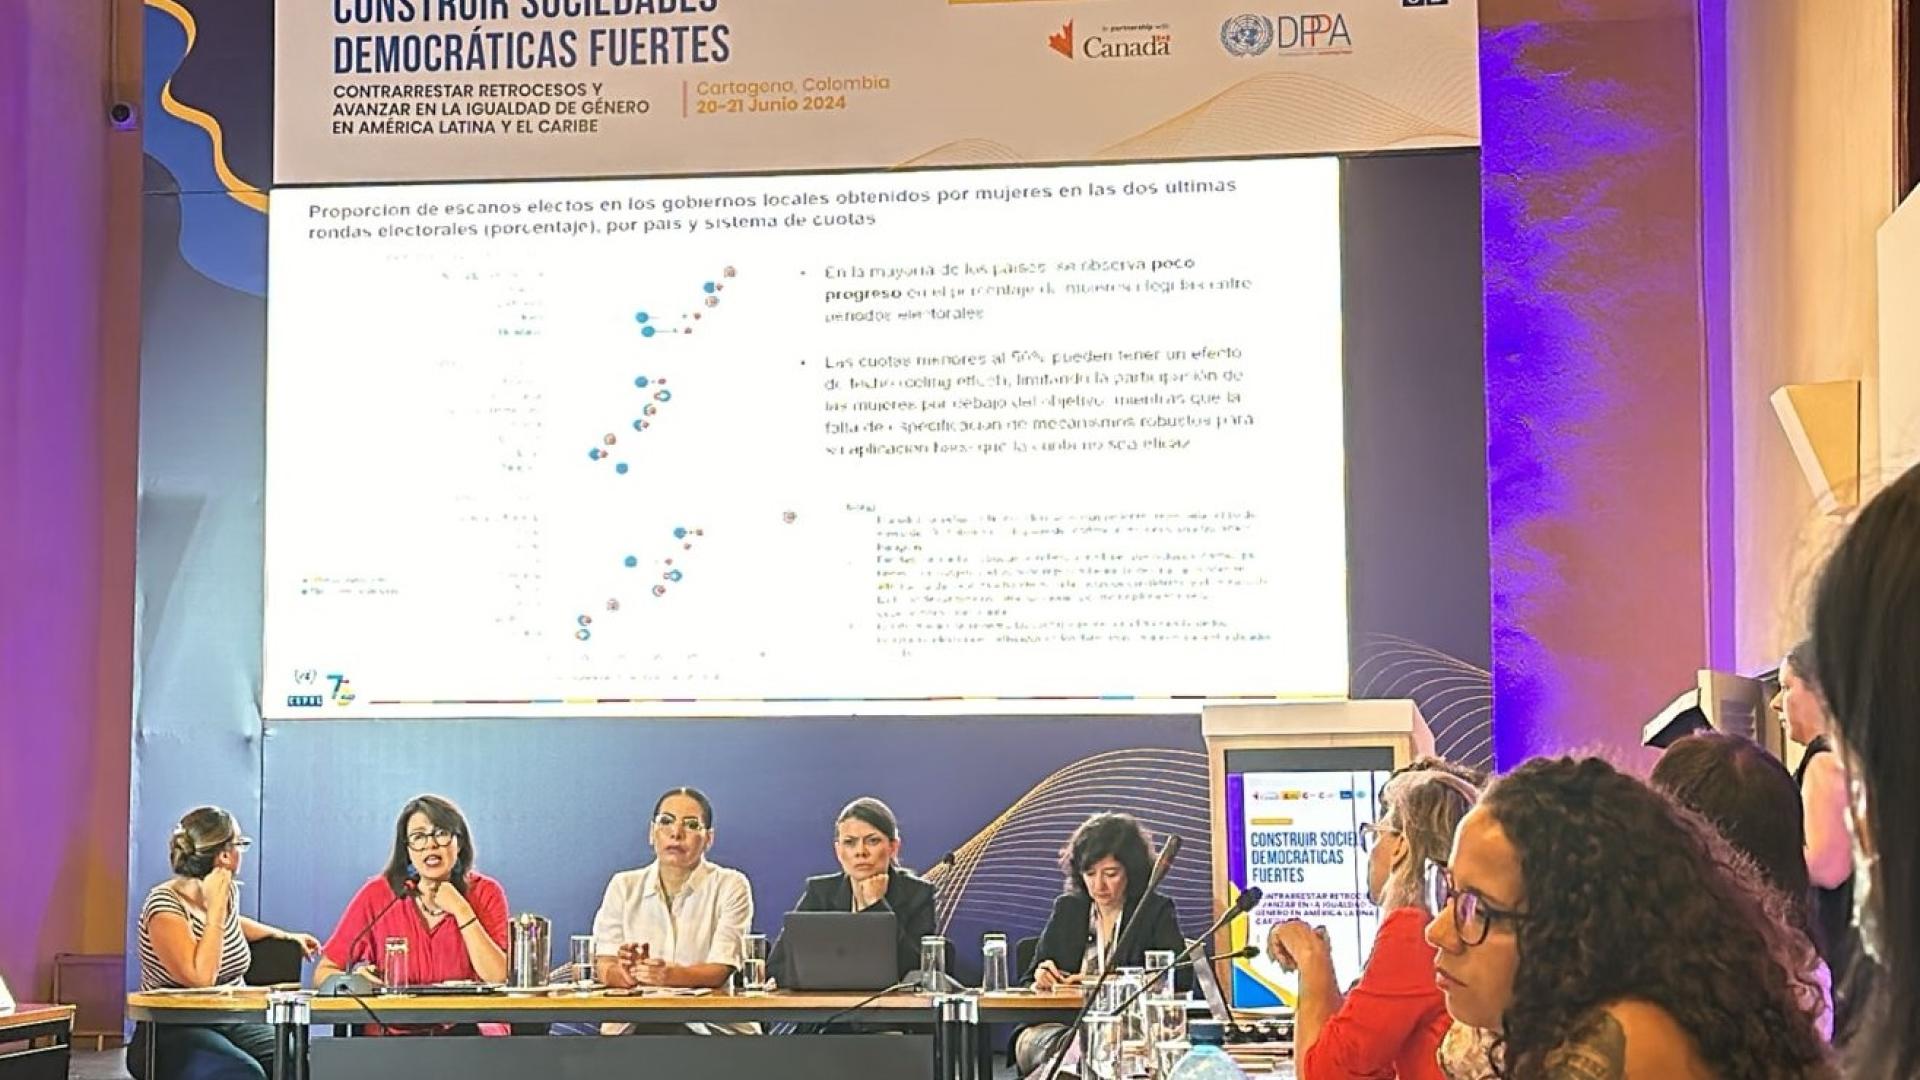 Karen García Rojas, Estadística de la División de Asuntos de Género de la CEPAL, participó en la sesión titulada “América Latina y el Caribe.30 años de democracia paritaria y participación”